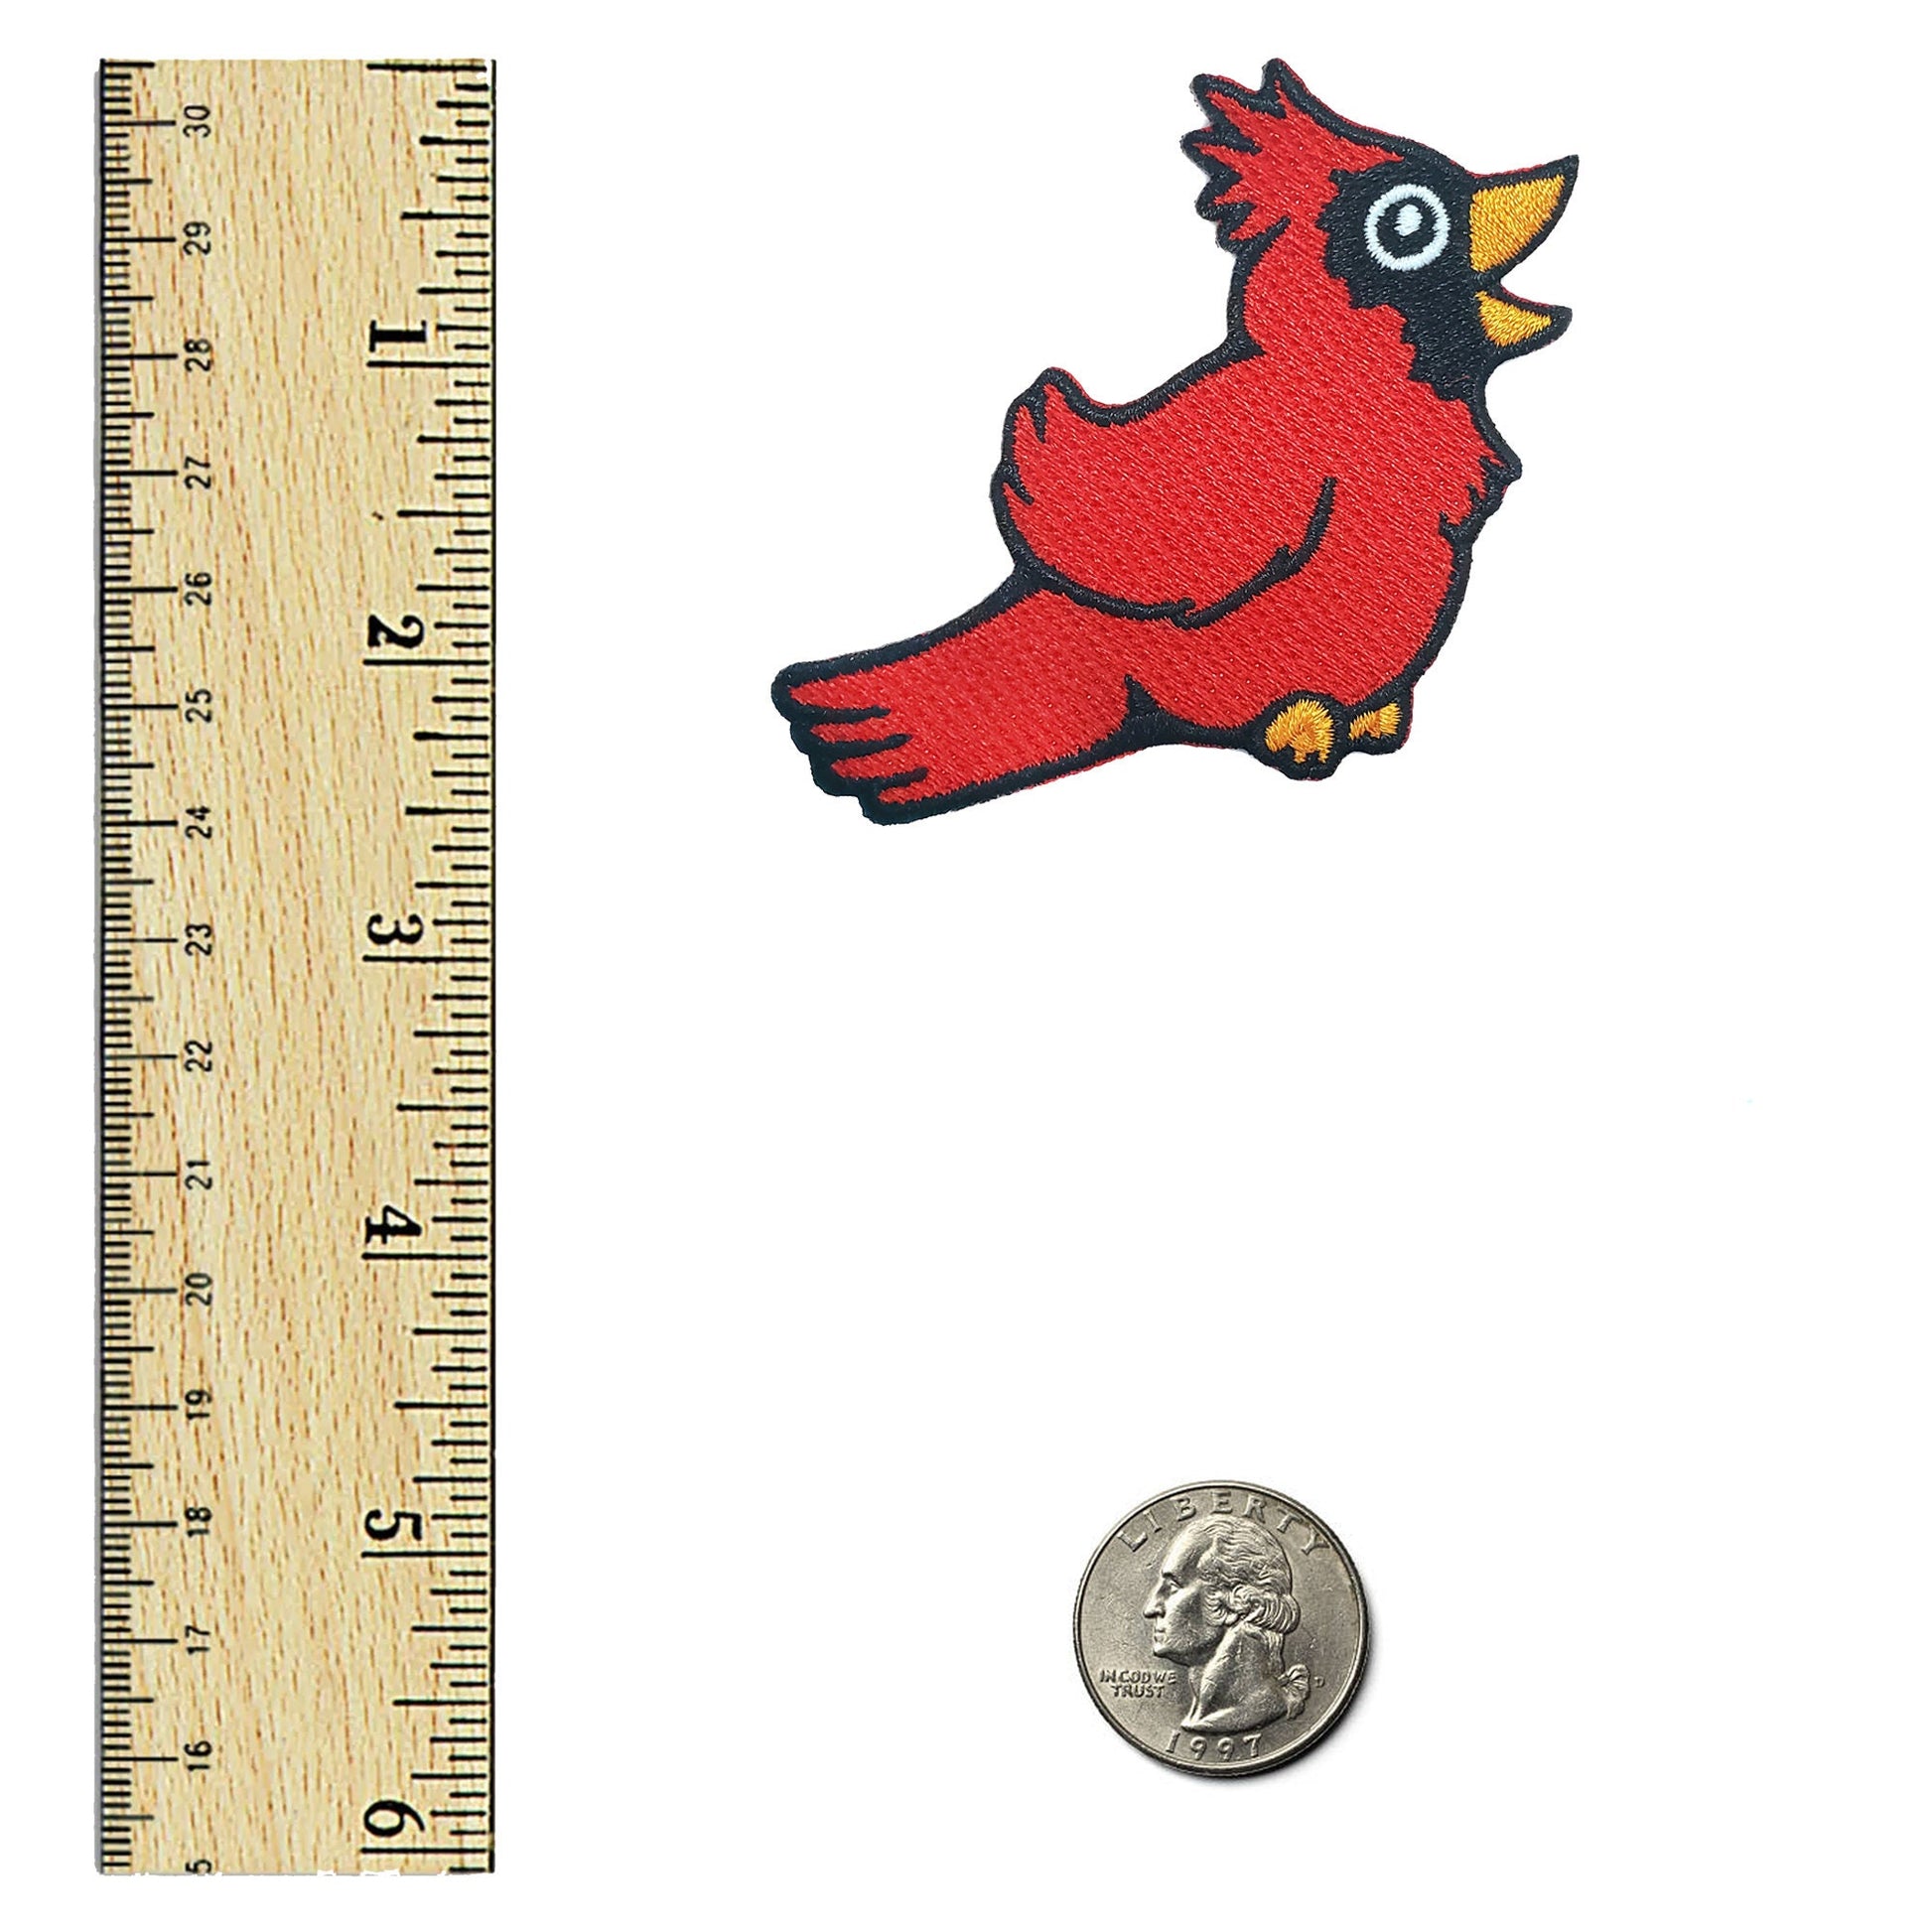 Cardinal Bird Patch - Kolorspun Enamel Pins